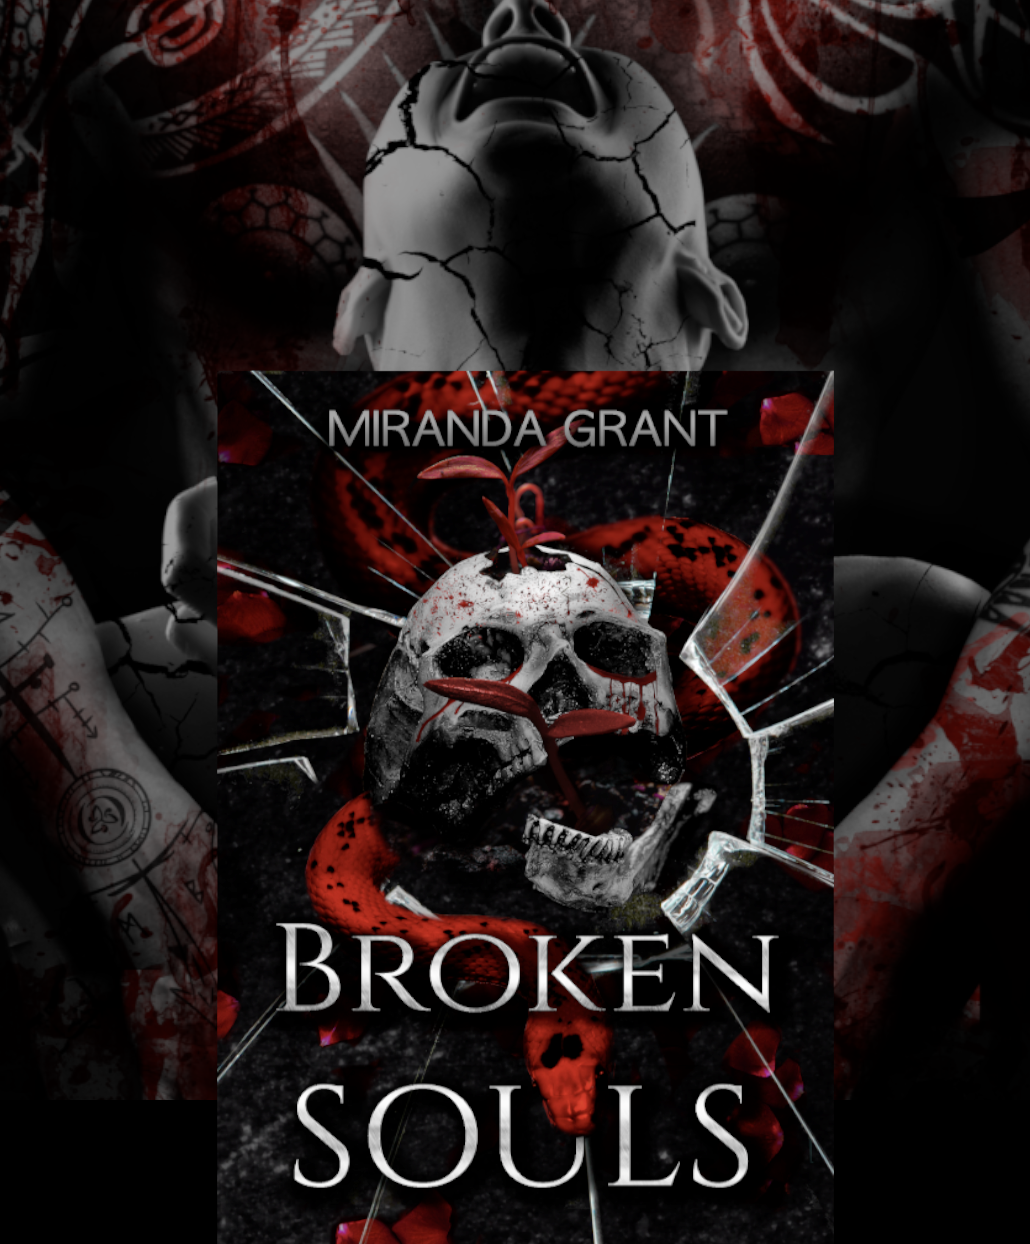 Broken Souls by Miranda Grant